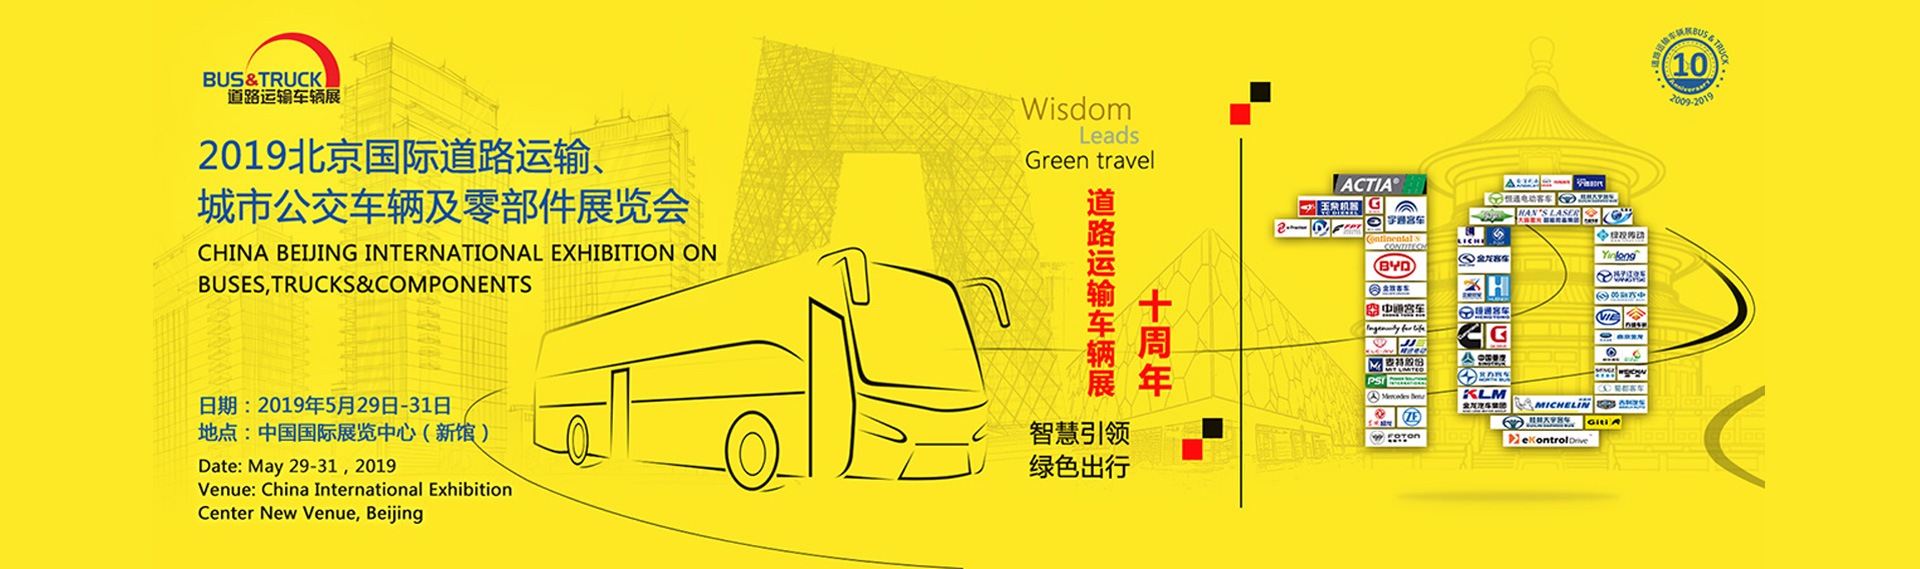 金龙客车展台 2019北京国际道路运输、城市公交车辆及零配件展览会